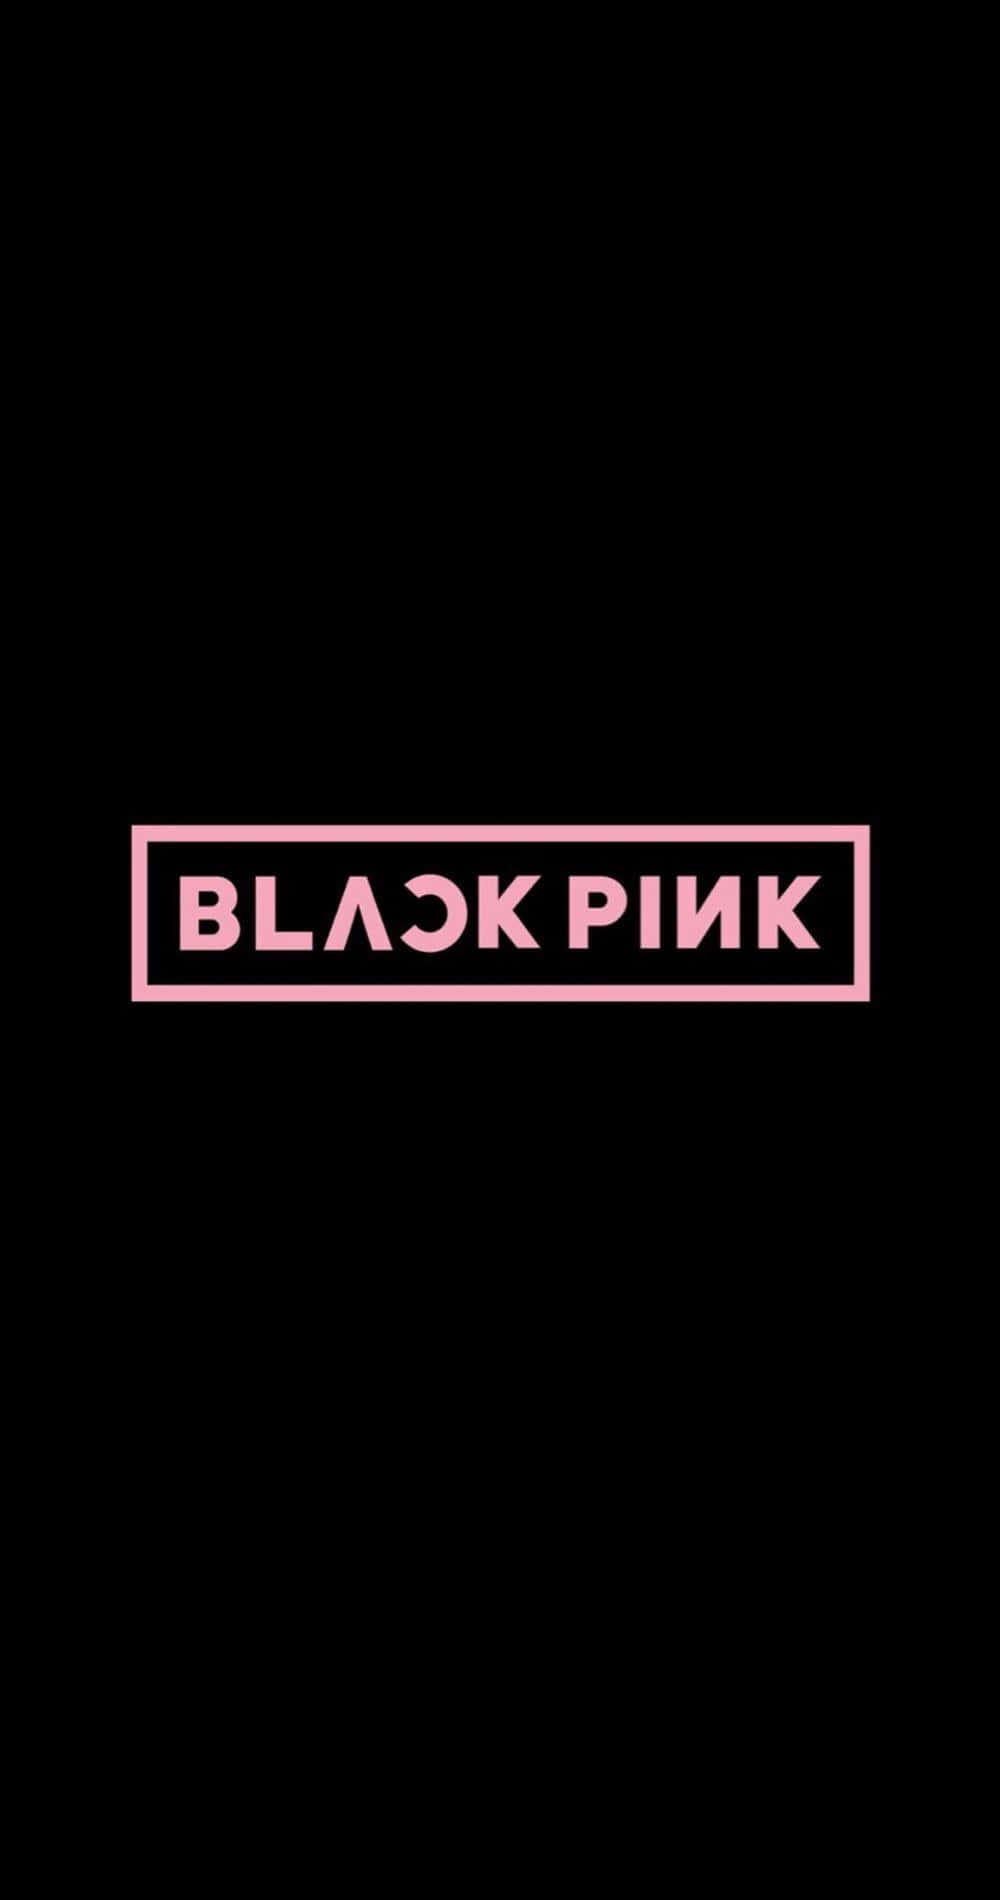 Blackpink: The Epitome Of K-pop Glamour